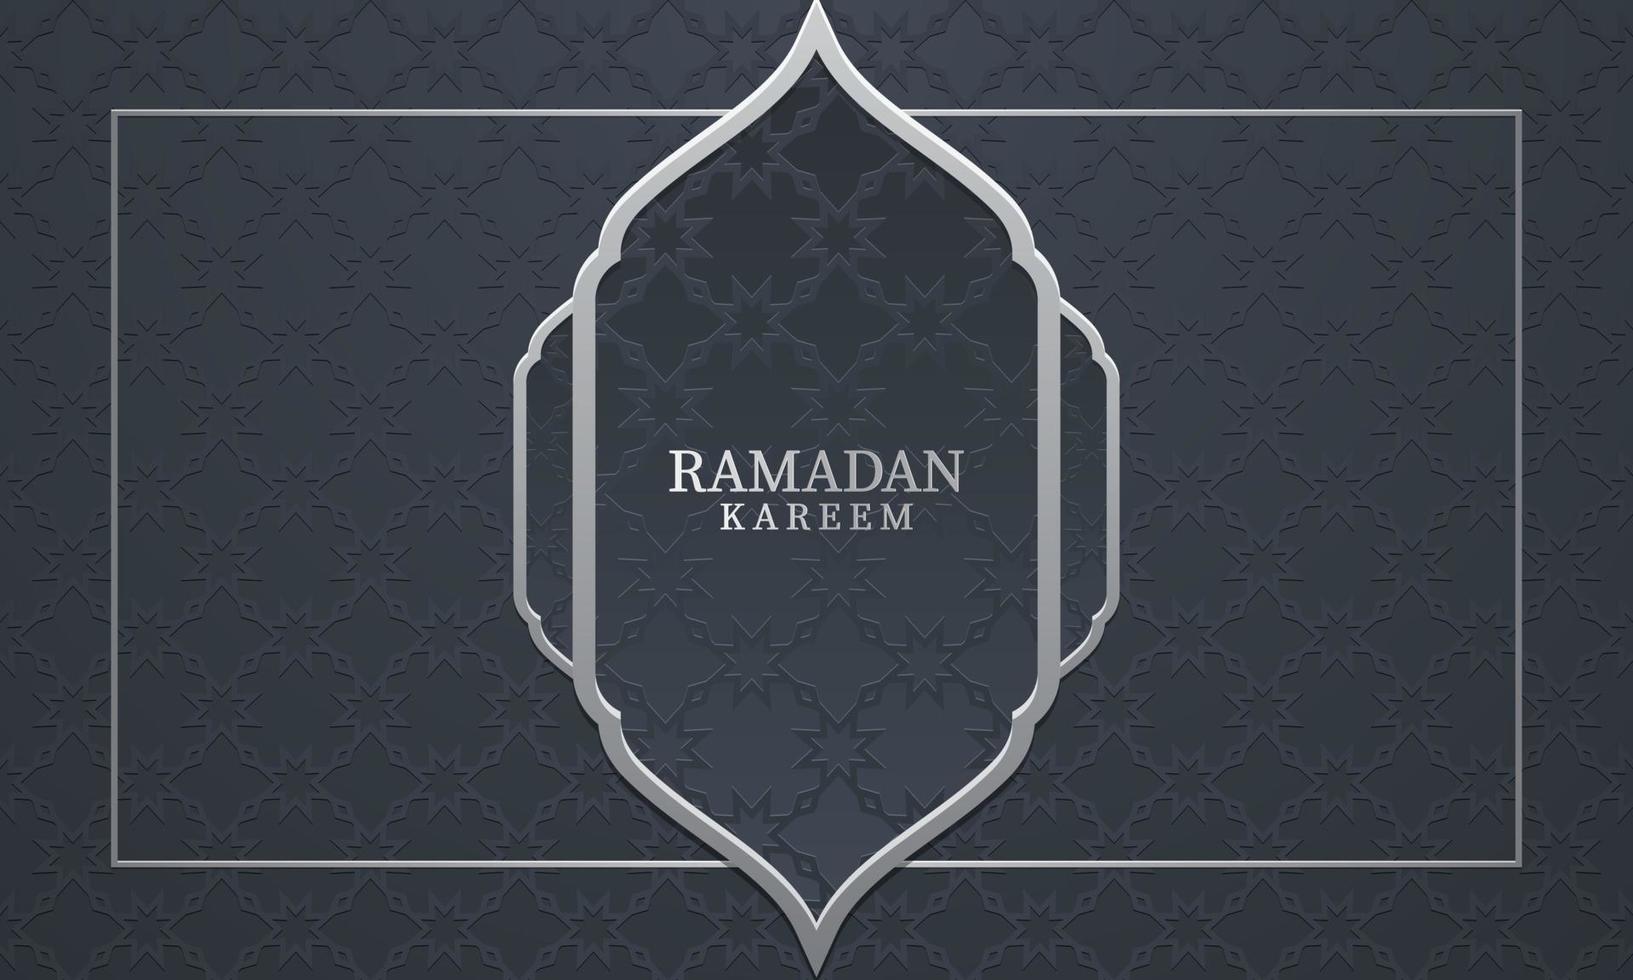 Vektorgrafik von Ramadan Kareem mit grauem Musterhintergrund. geeignet für Grußkarten, Tapeten und andere Ramadan-Hintergrundbilder. vektor